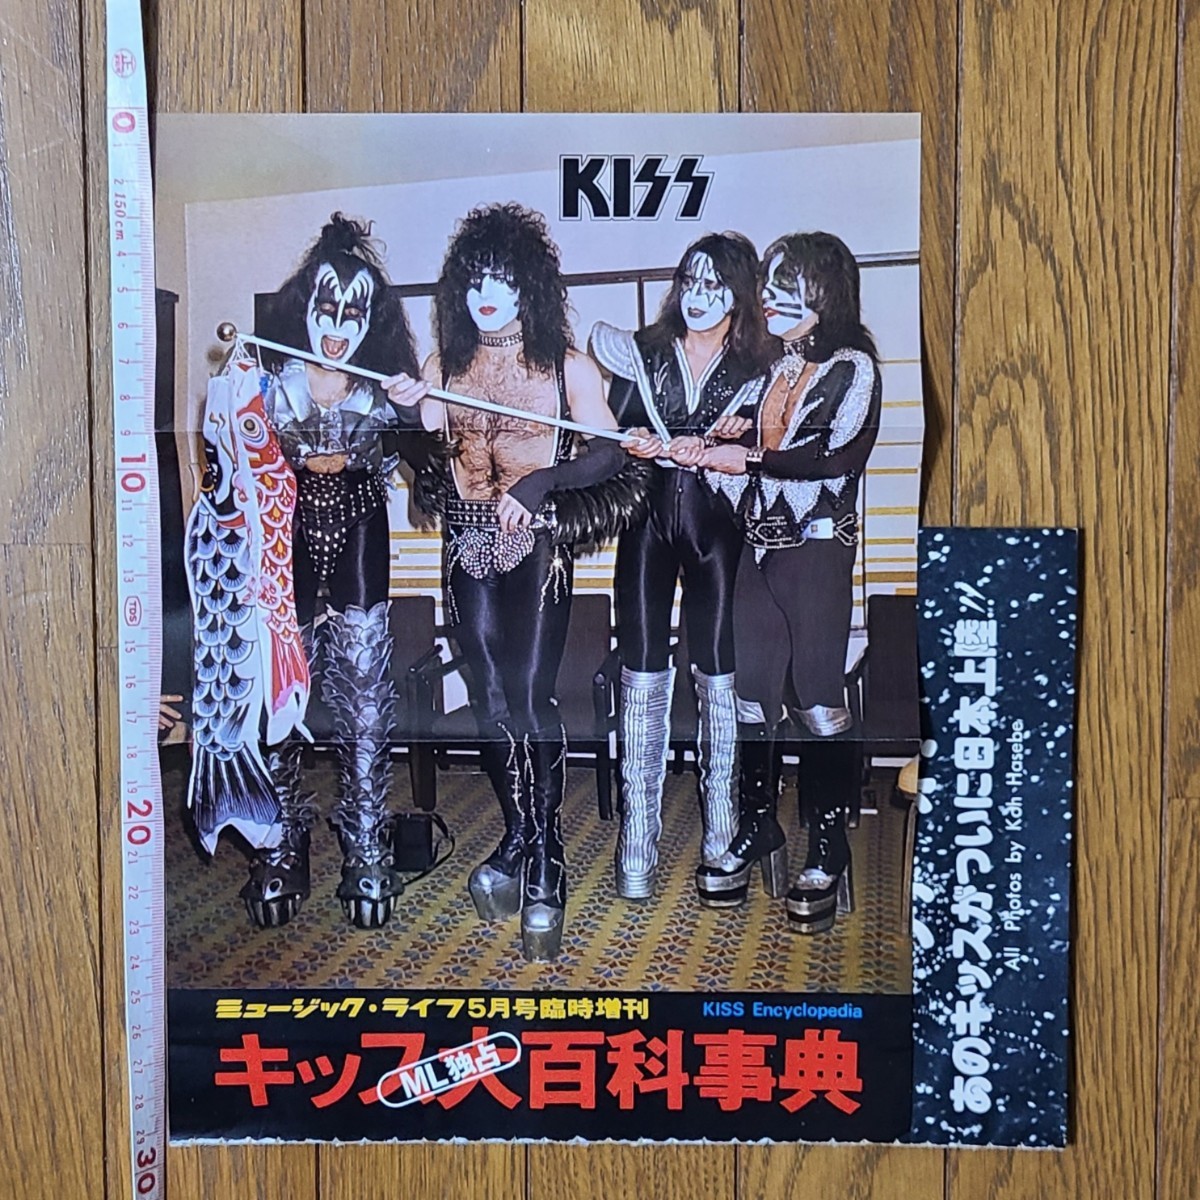 キッス KISS 地獄のロック・ファイヤー アライブⅡ 地獄の全貌 雑誌レコード広告 1977年【切り抜き】キッス大百科事典出版告知広告の画像6